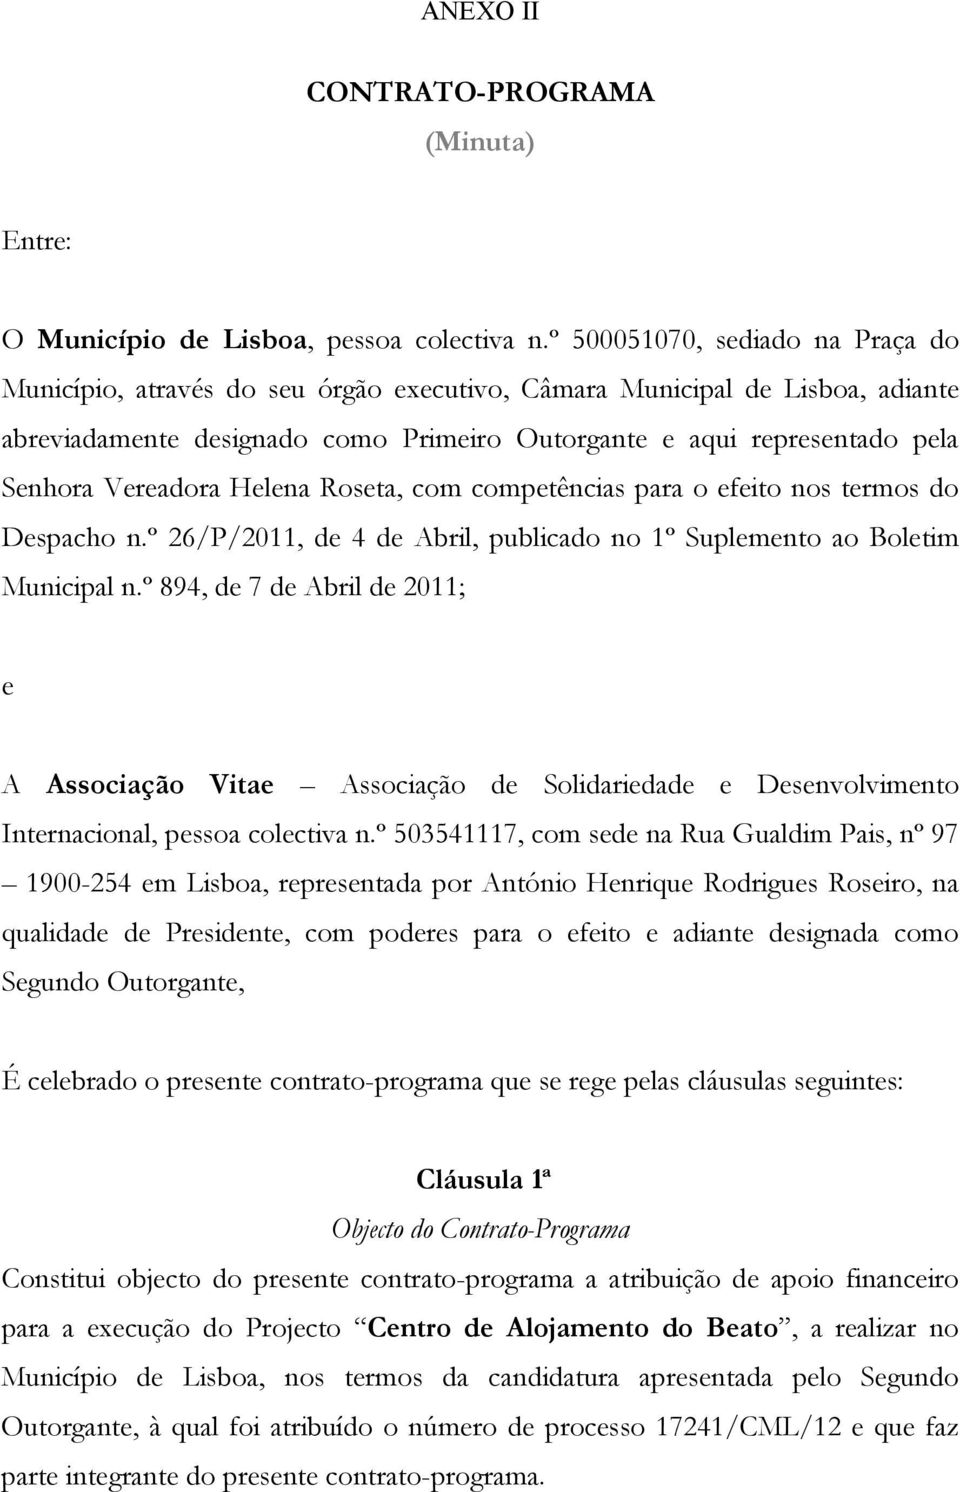 Vereadora Helena Roseta, com competências para o efeito nos termos do Despacho n.º 26/P/2011, de 4 de Abril, publicado no 1º Suplemento ao Boletim Municipal n.